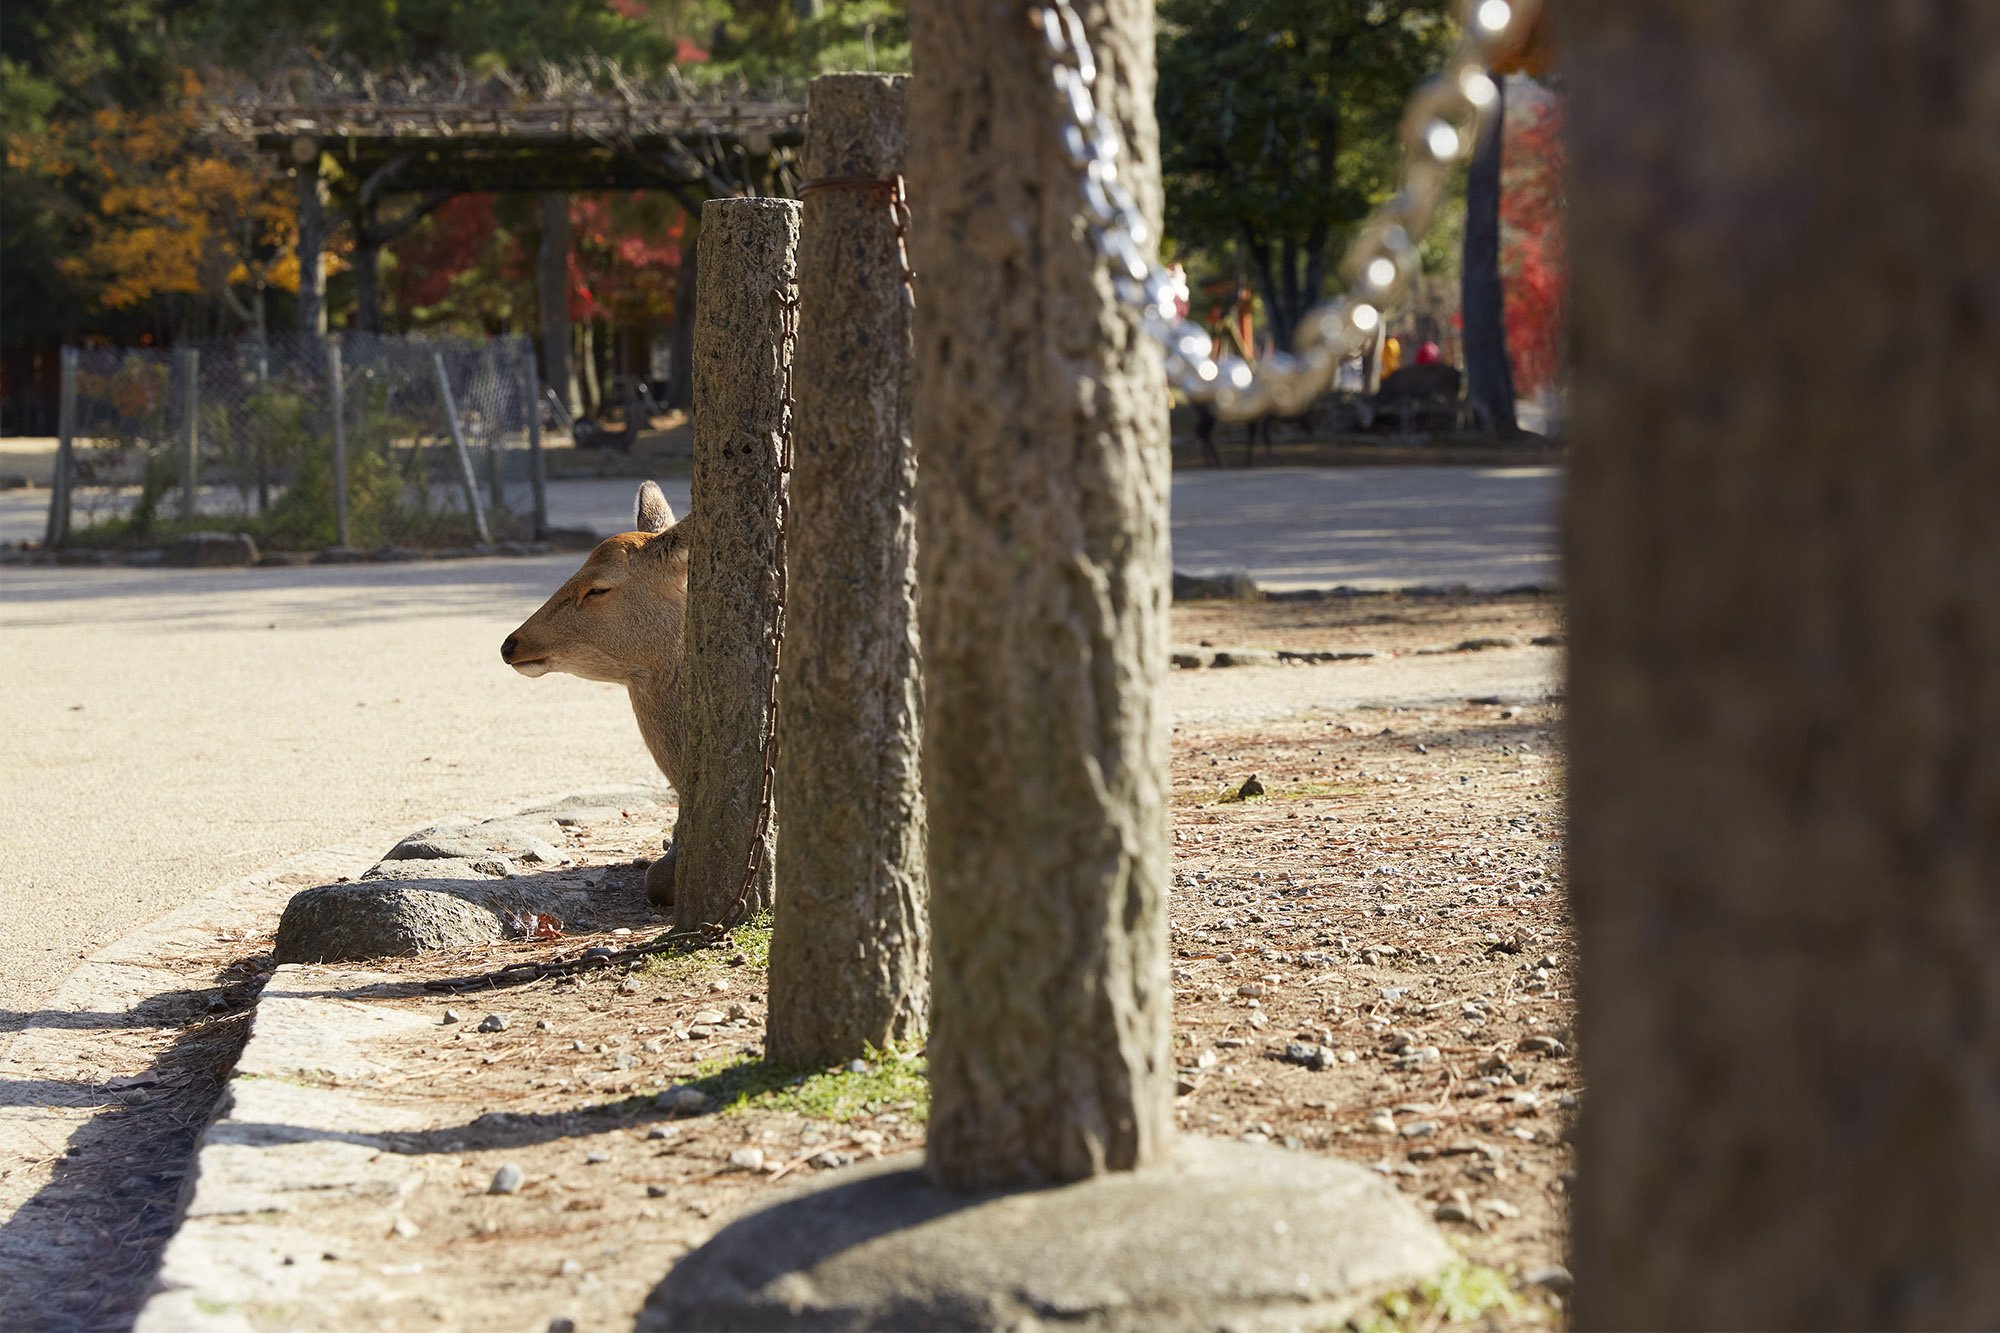   Nara, Japan  